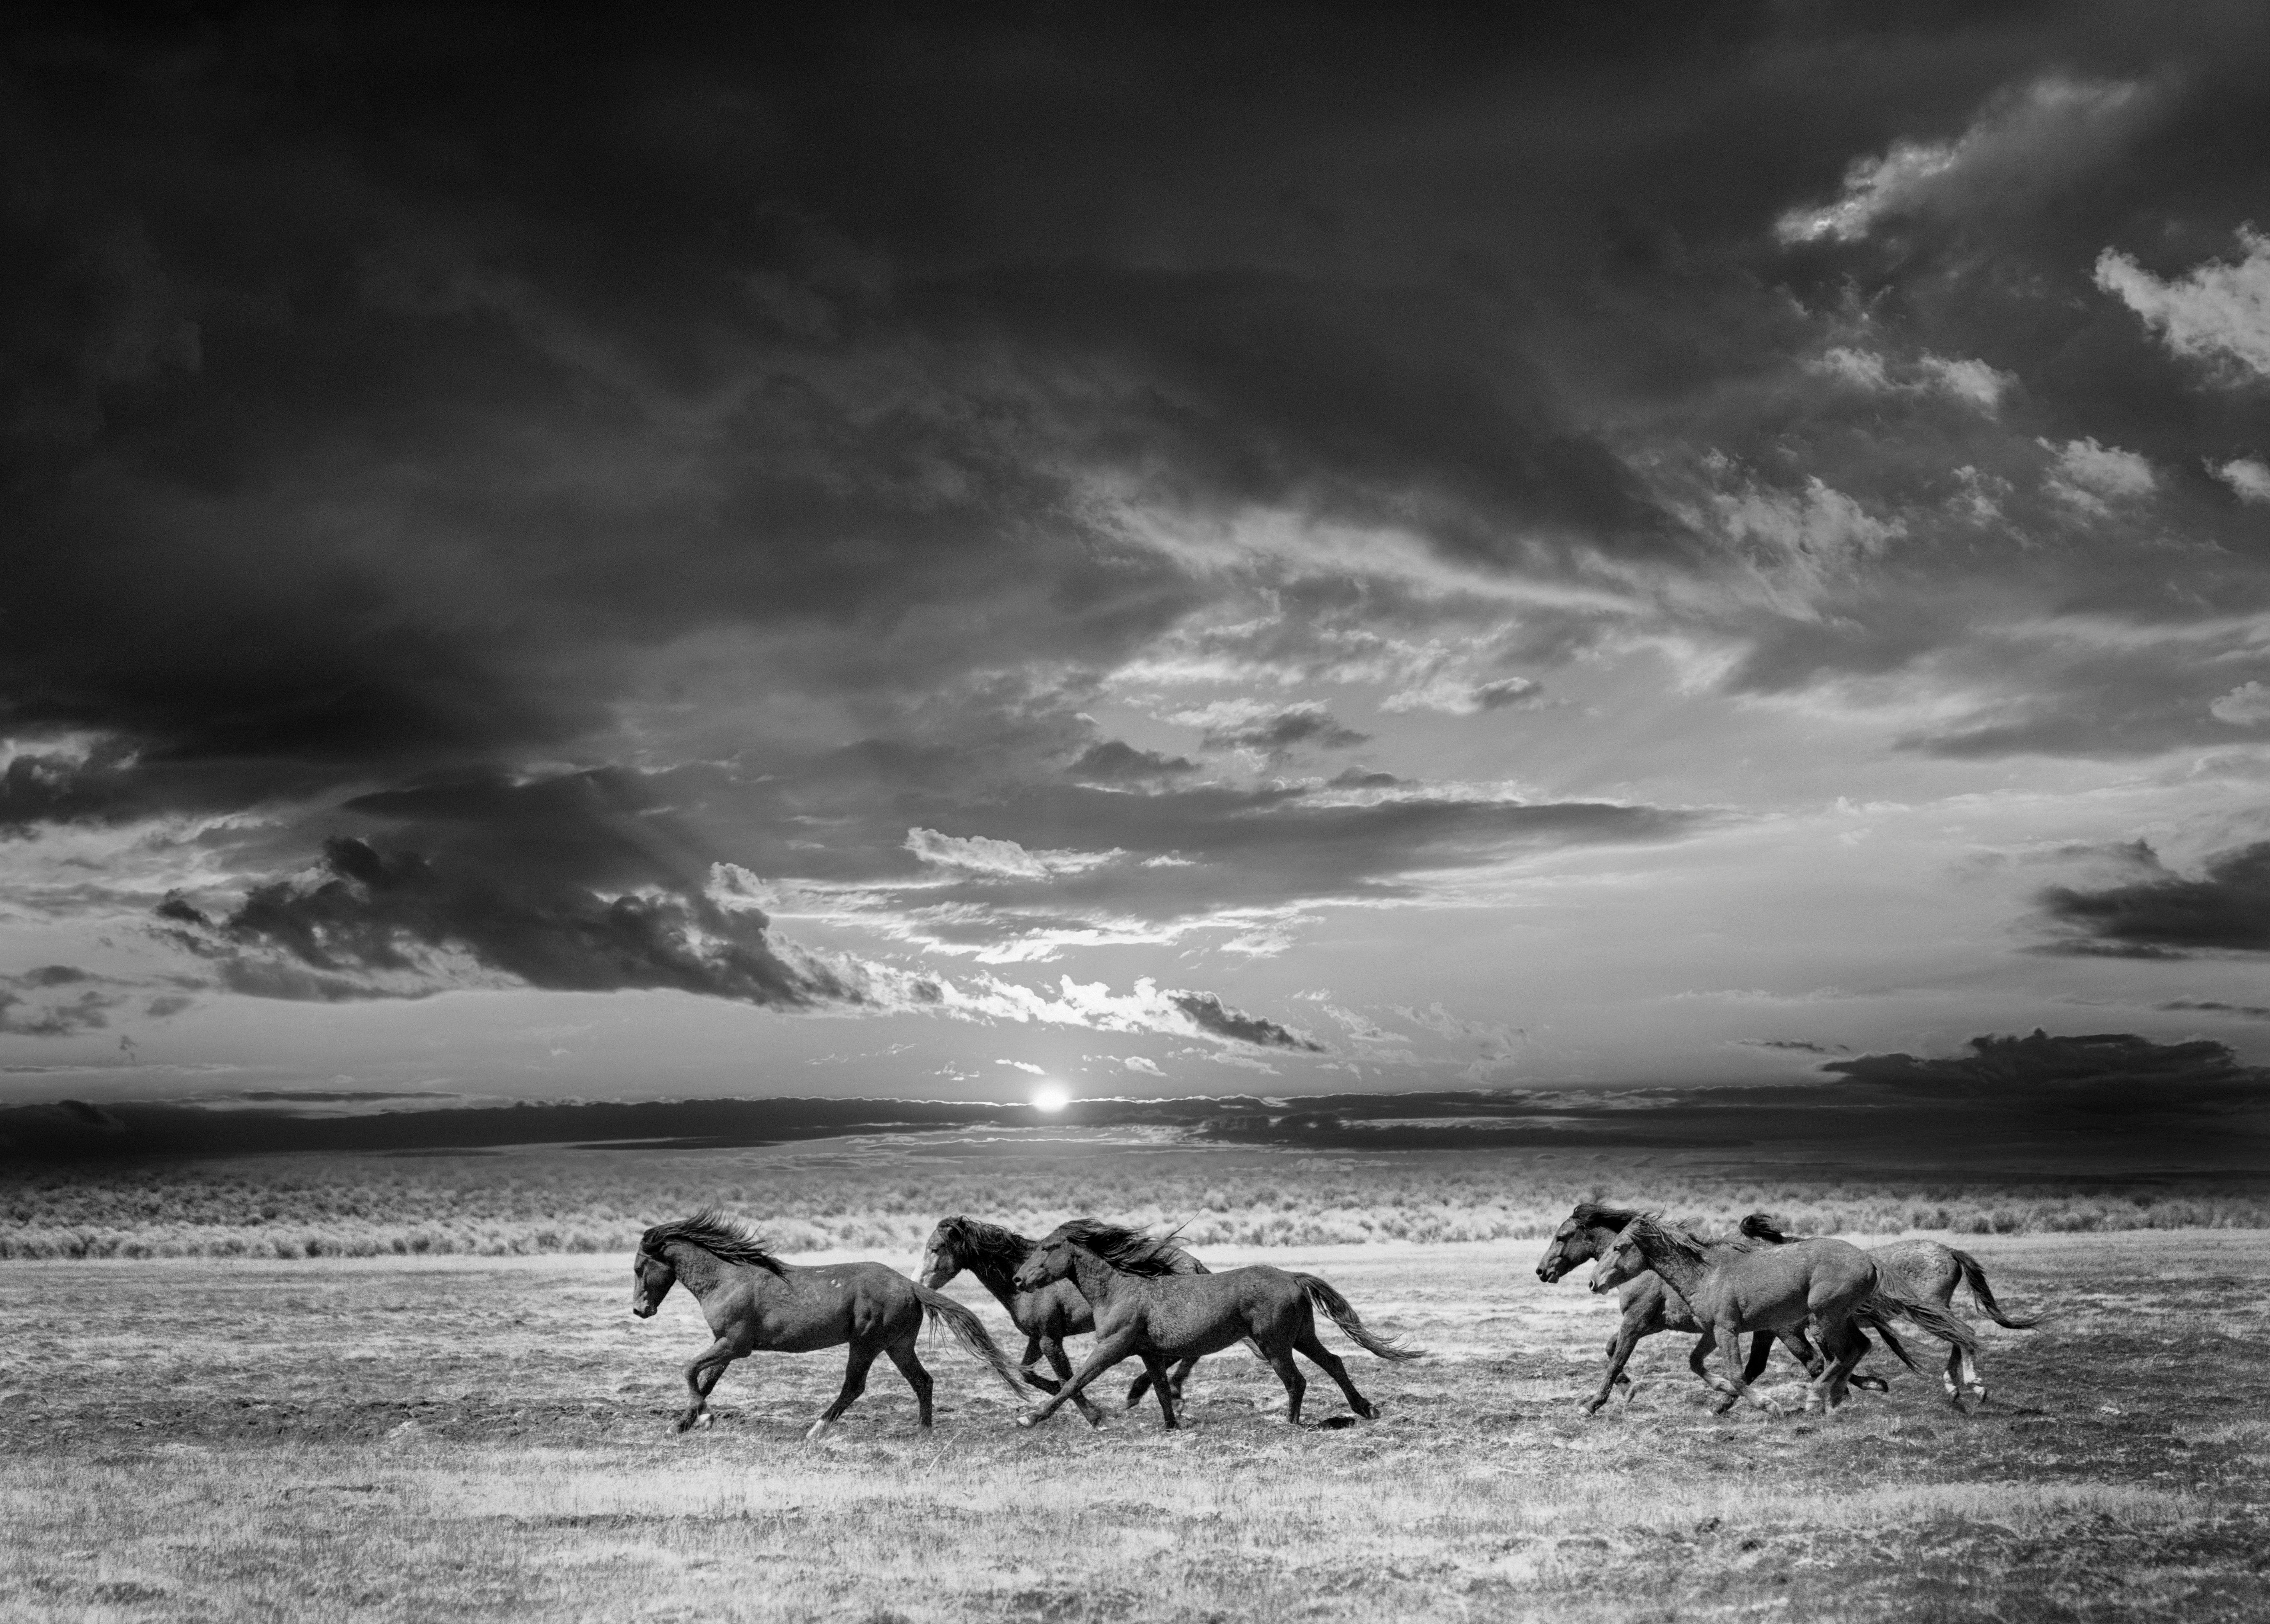 Black and White Photograph Shane Russeck - "Chasing the Light" 36x48 Photographie en noir et blanc de chevaux sauvages, The Photograph